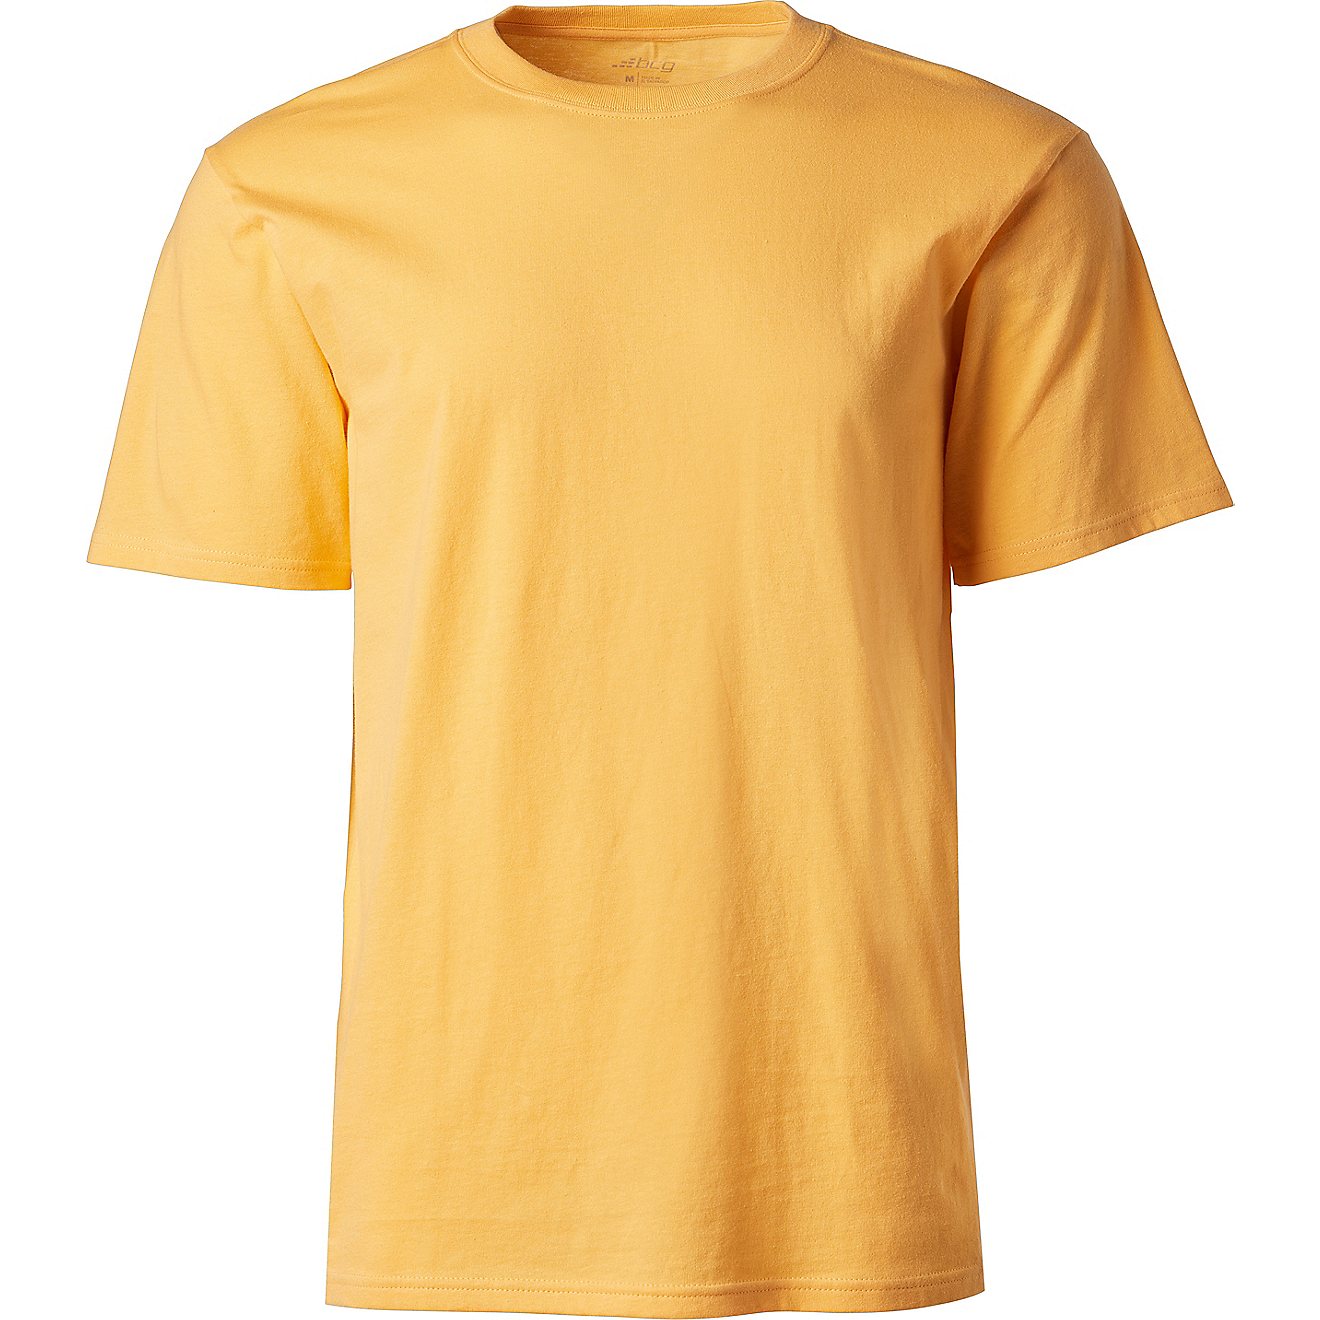 BCG Men's Cotton T-shirt                                                                                                         - view number 1